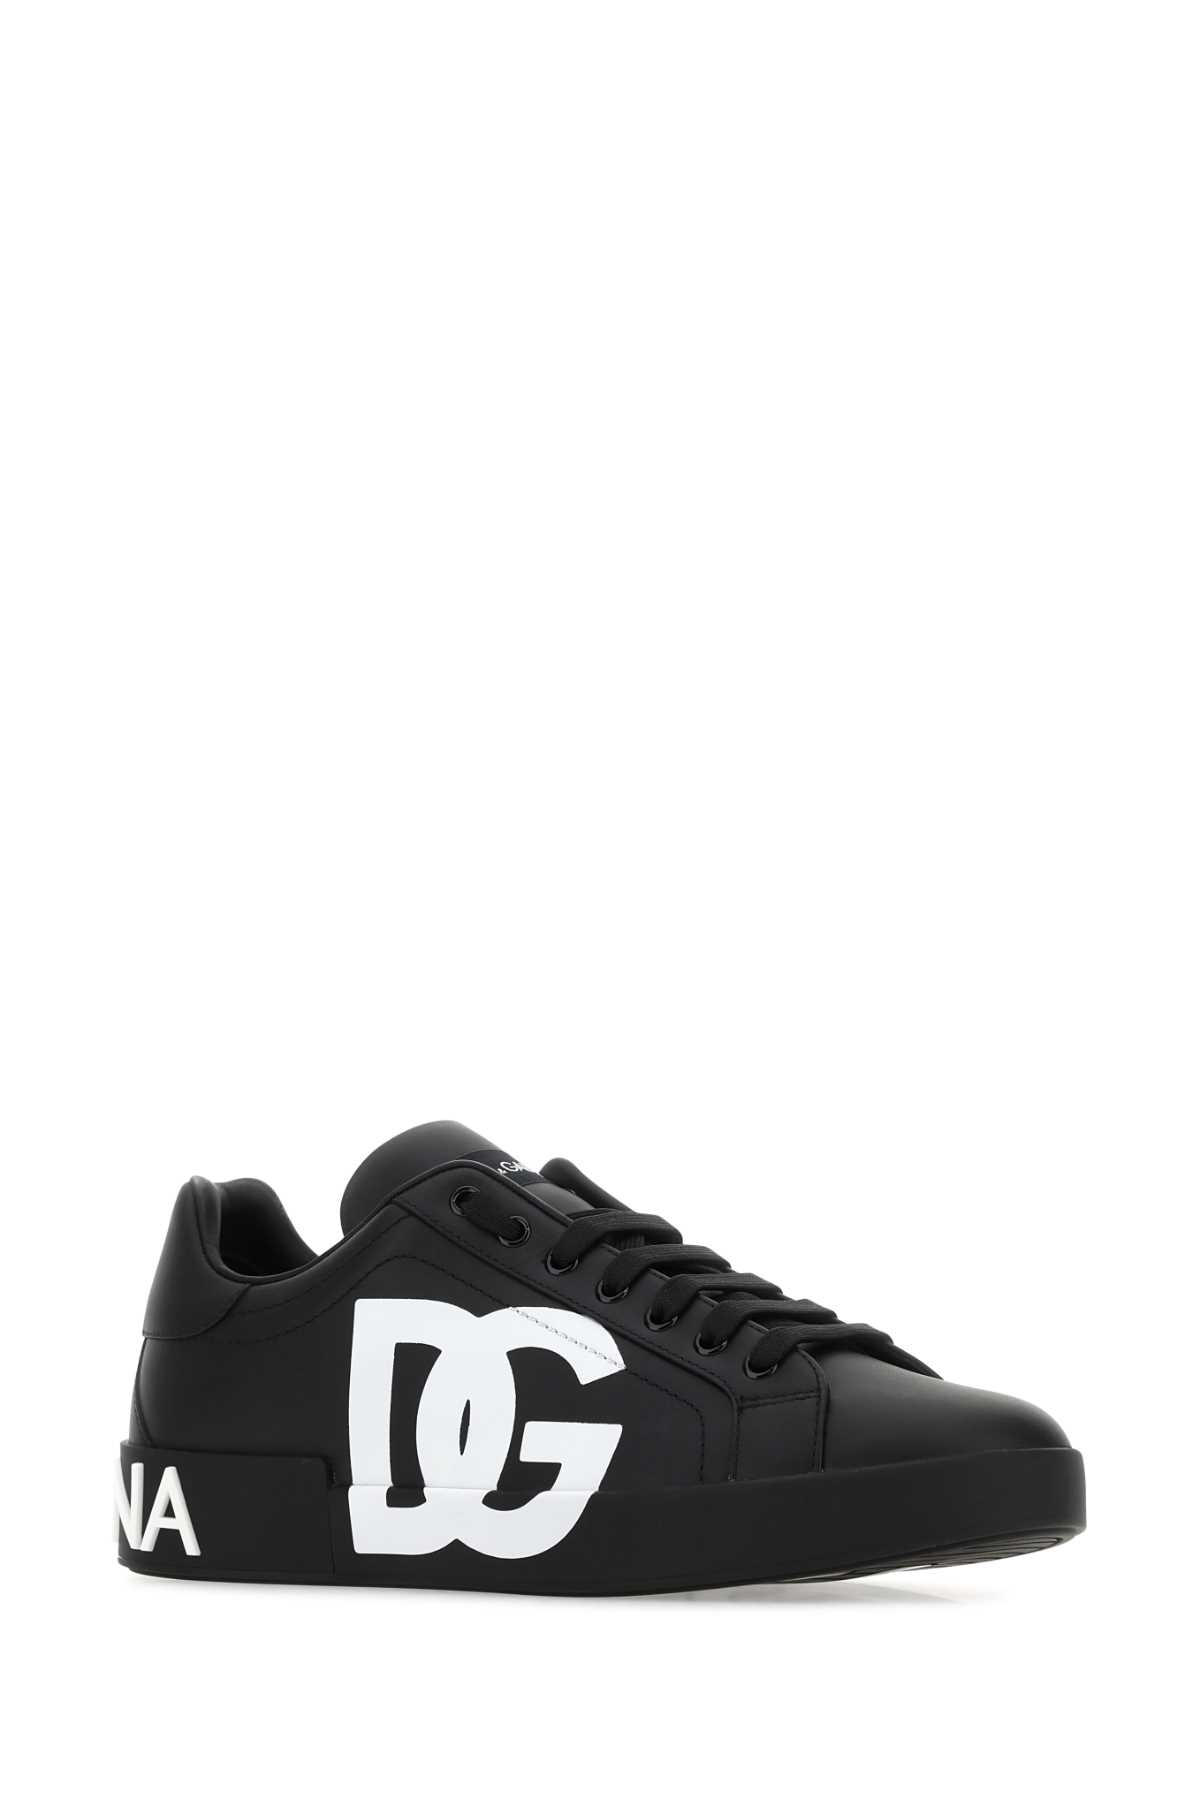 Shop Dolce & Gabbana Black Nappa Leather Portofino Sneakers In 8b956